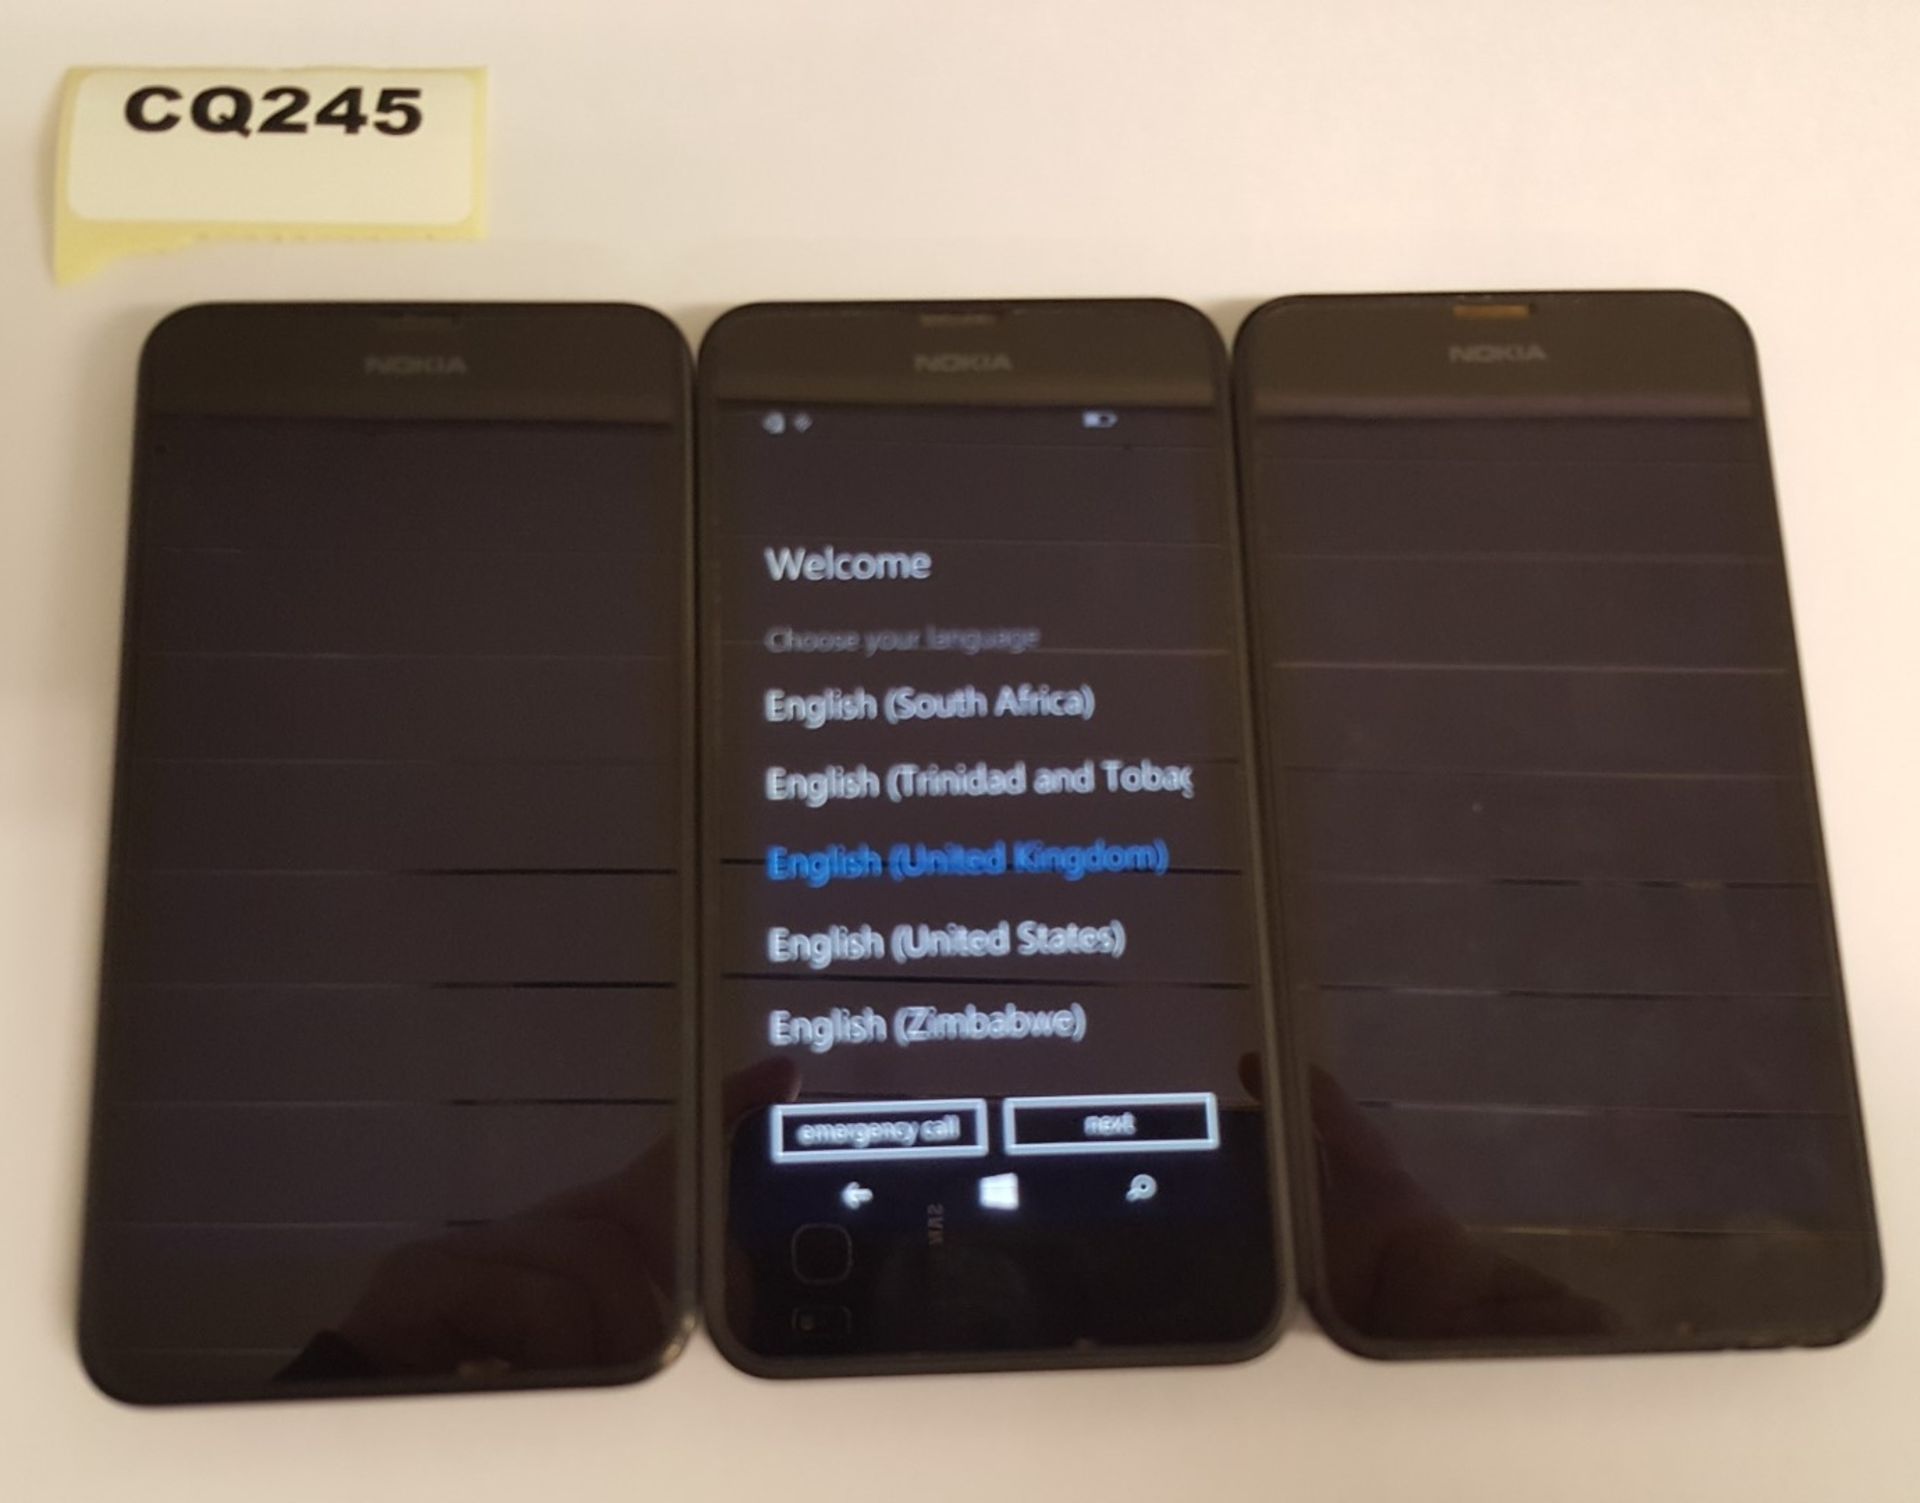 3 x Nokia Lumia 630 Black Smartphones - Ref CQ245 - Image 3 of 3